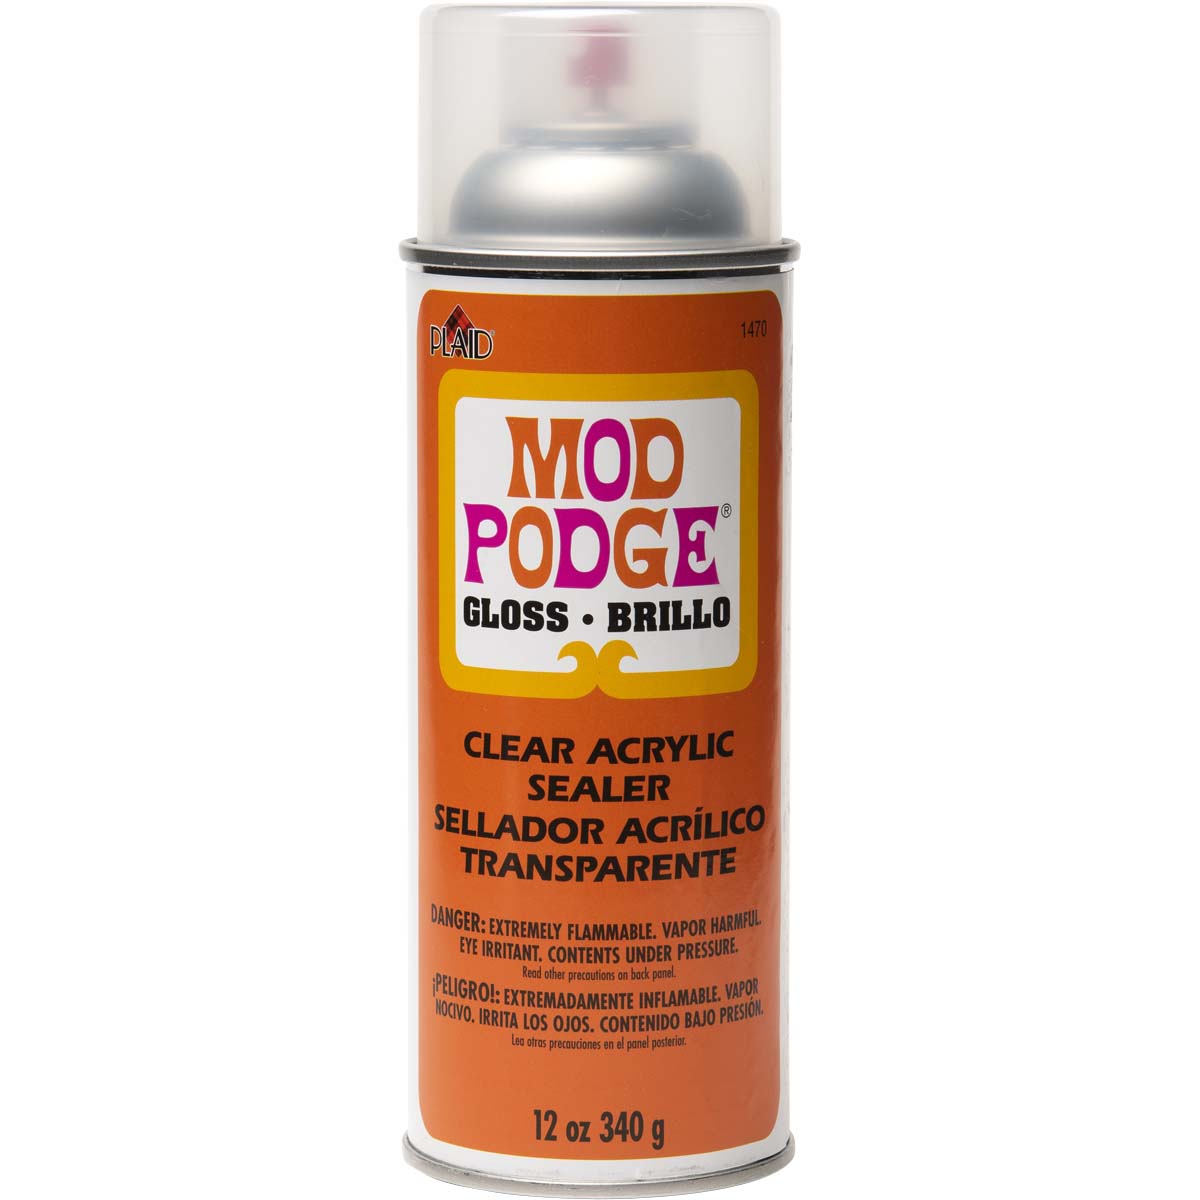 Mod Podge Water-Based Sealer - Gloss - 8 oz – K. A. Artist Shop